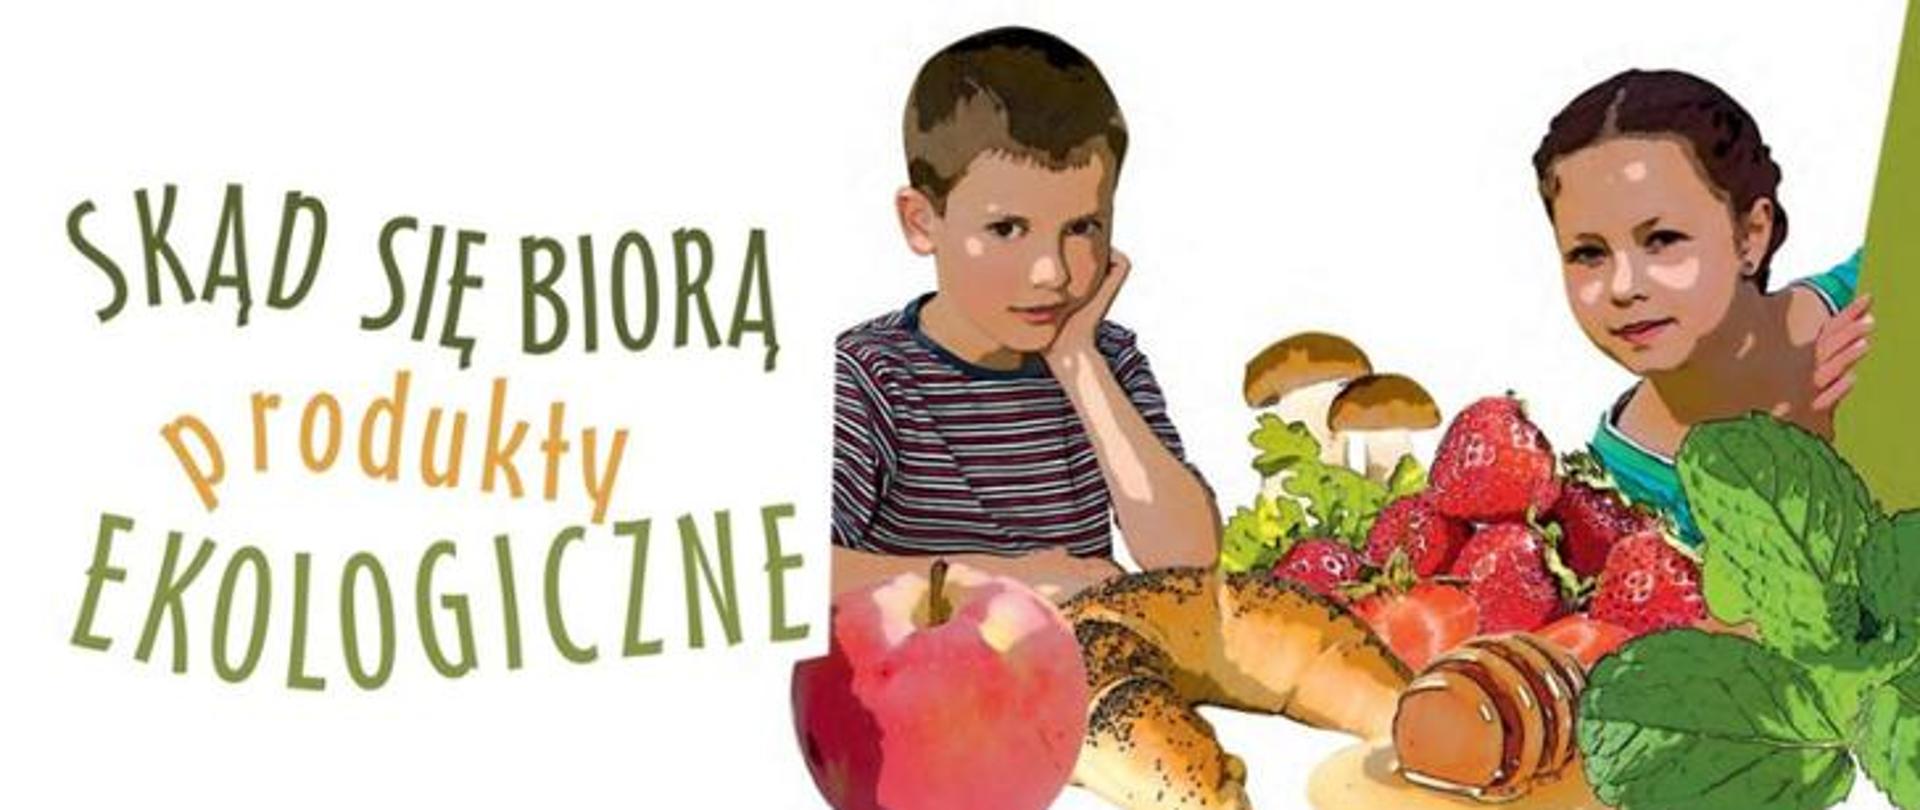 II edycja ogólnopolskiego przedszkolnego programu edukacyjnego „Skąd się biorą produkty ekologiczne”